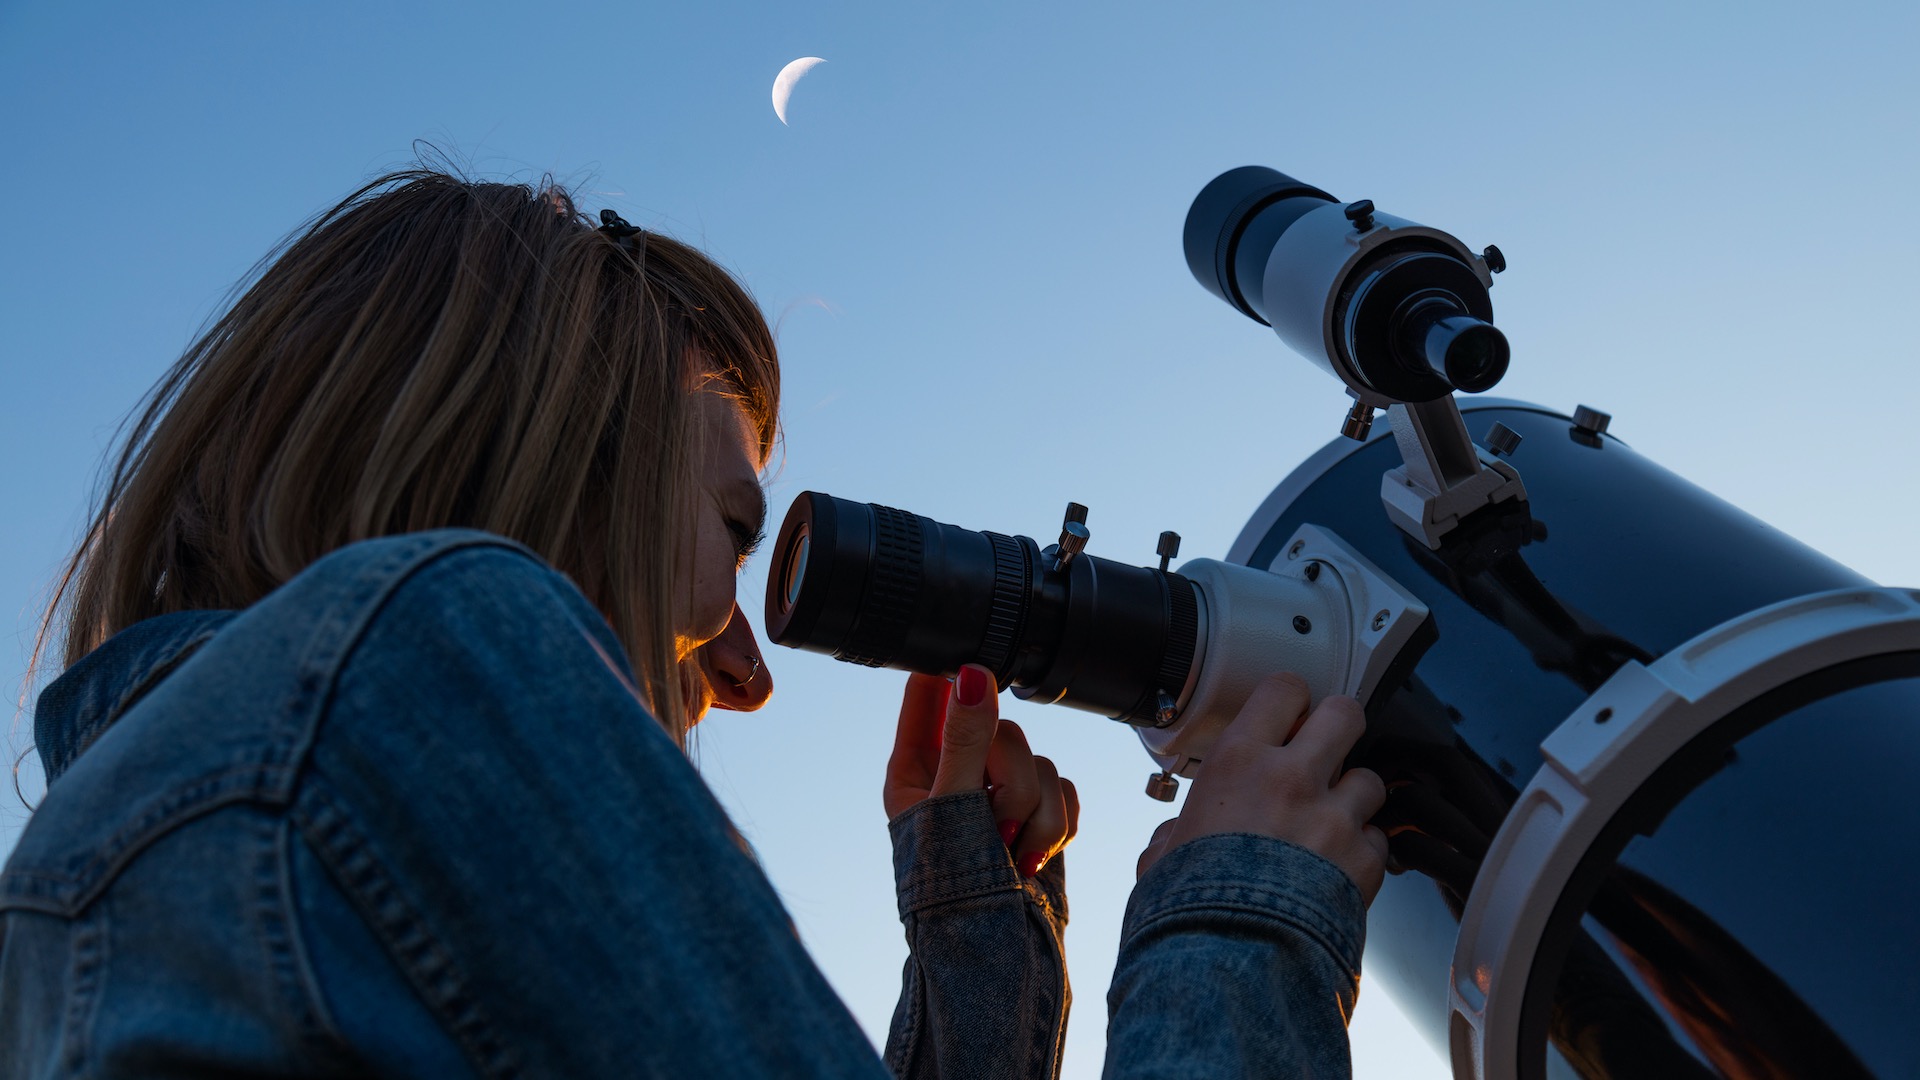 Die Auswahl ist groß und Beratung wichtig. Mit dem richtigen Teleskop gelingt der Einstieg in die Astronomie. AstroStar/Shutterstock.com